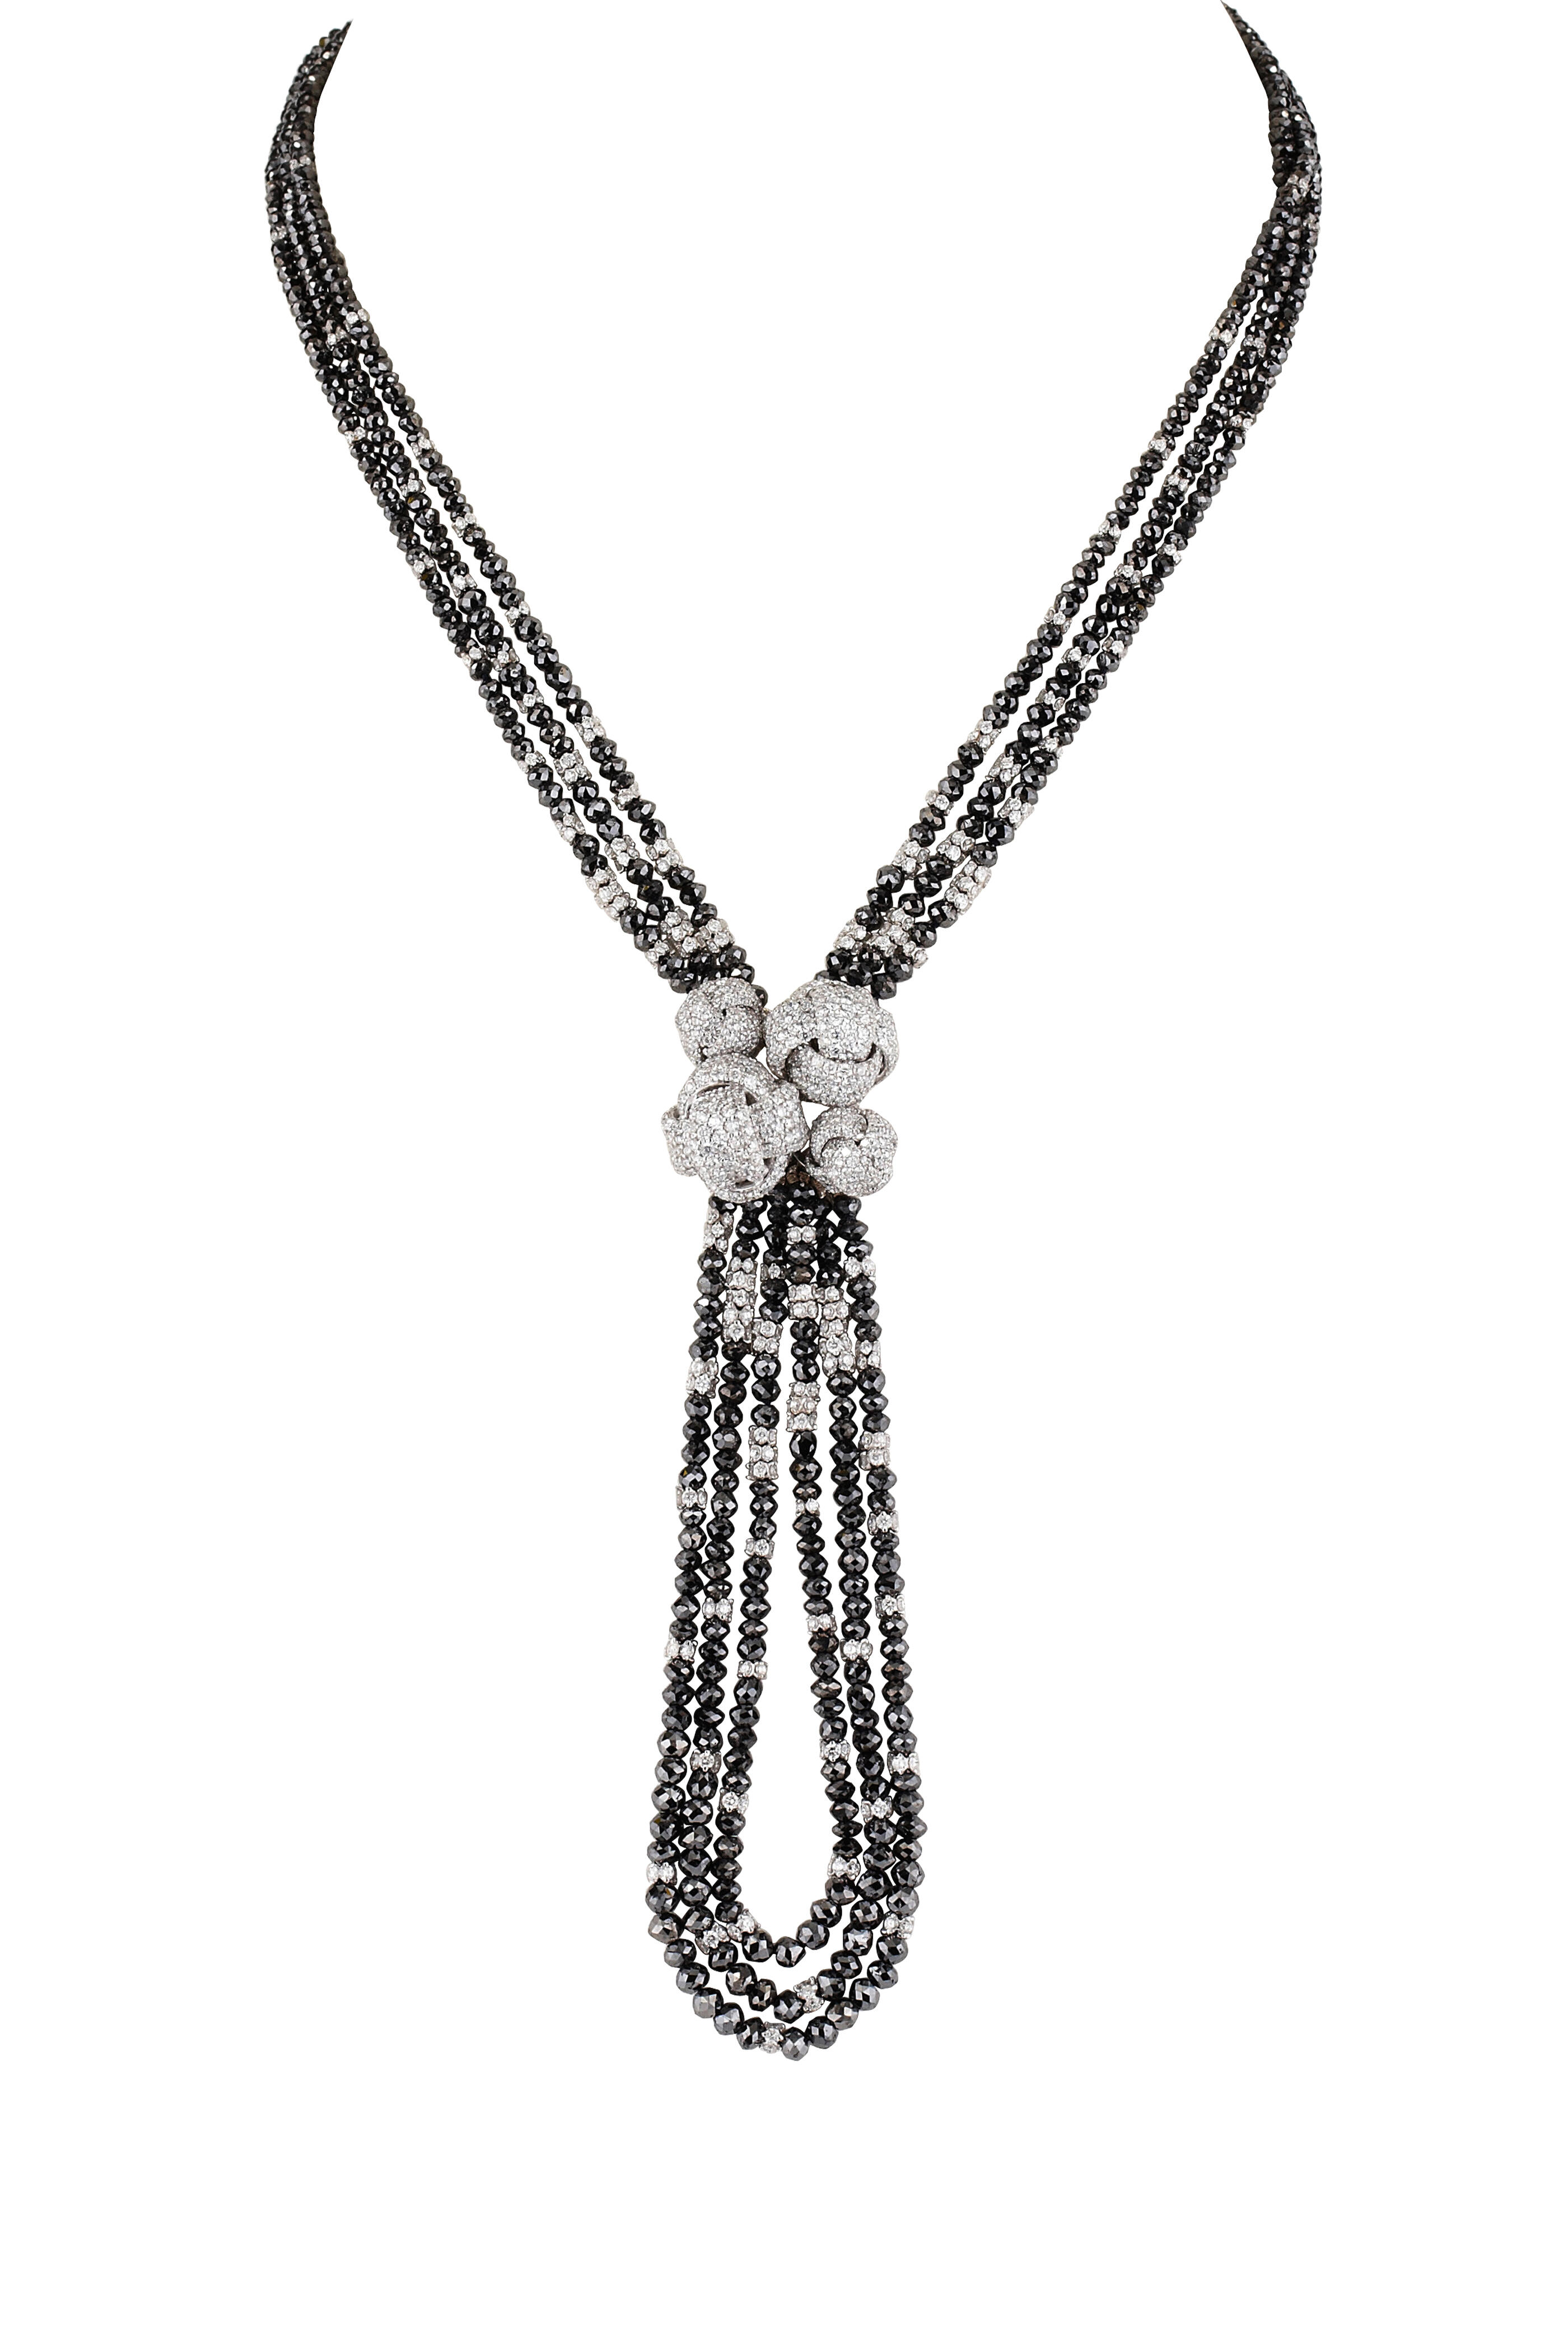 Mariani - 18K White Gold Black & White Diamond Necklace